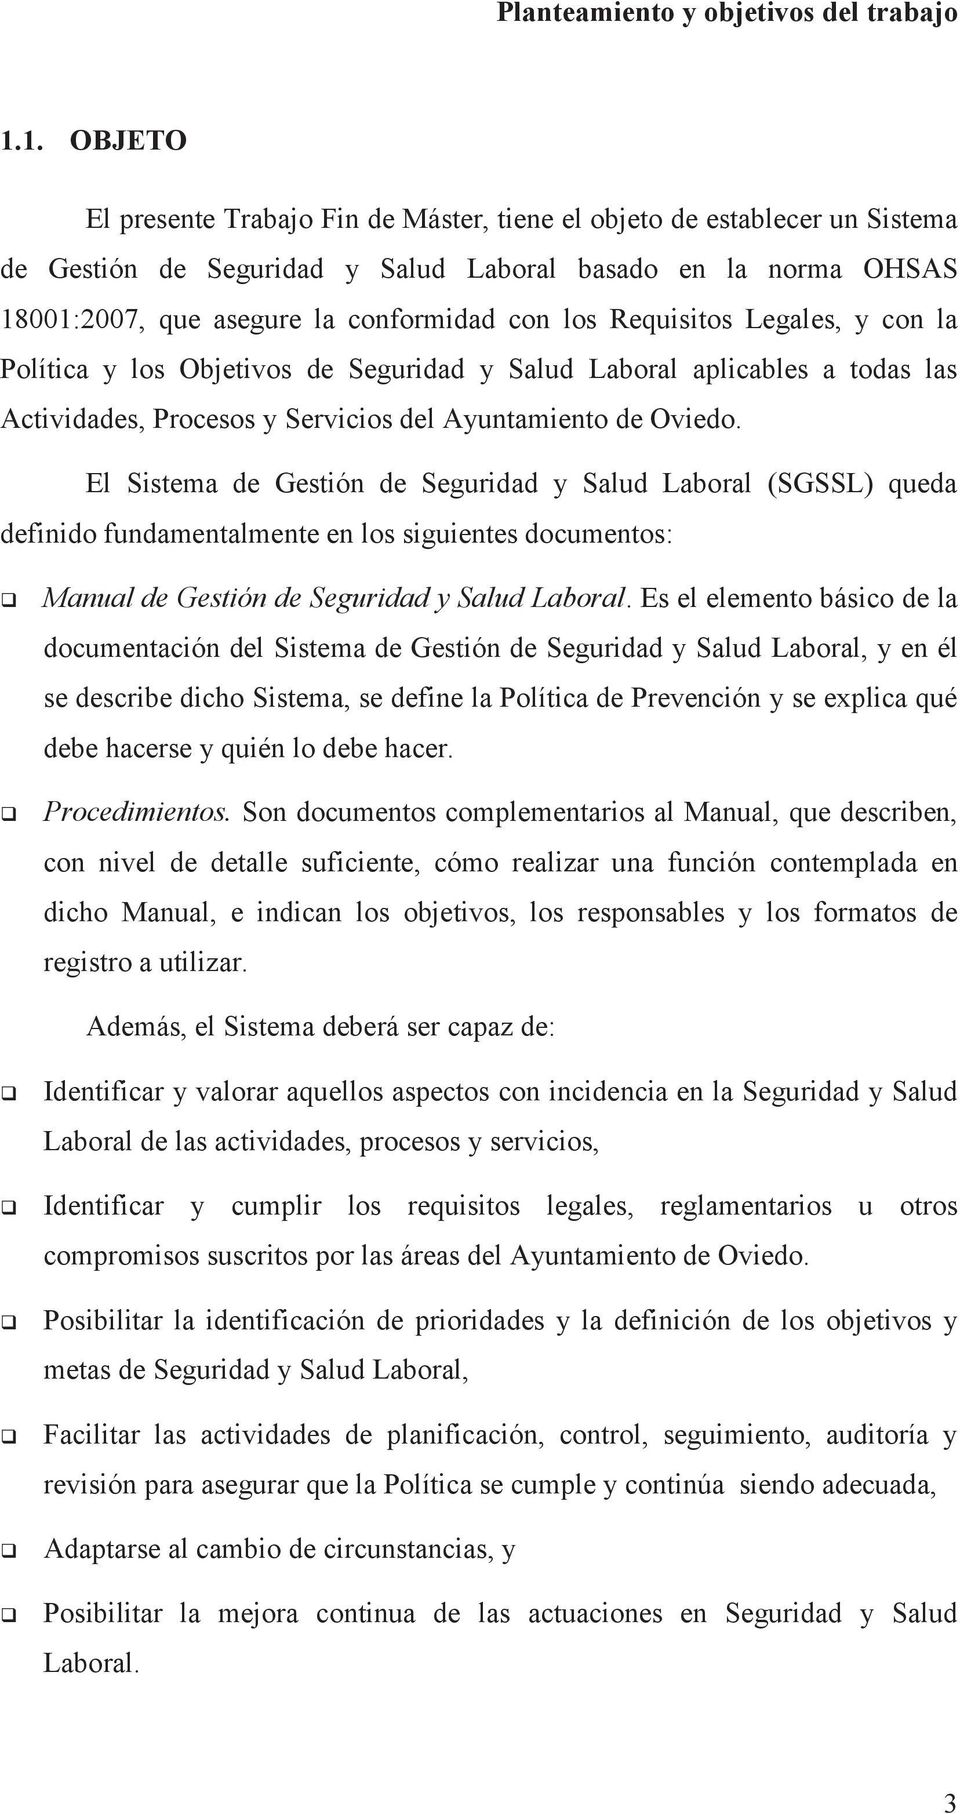 Requisitos Legales, y con la Política y los Objetivos de Seguridad y Salud Laboral aplicables a todas las Actividades, Procesos y Servicios del Ayuntamiento de Oviedo.